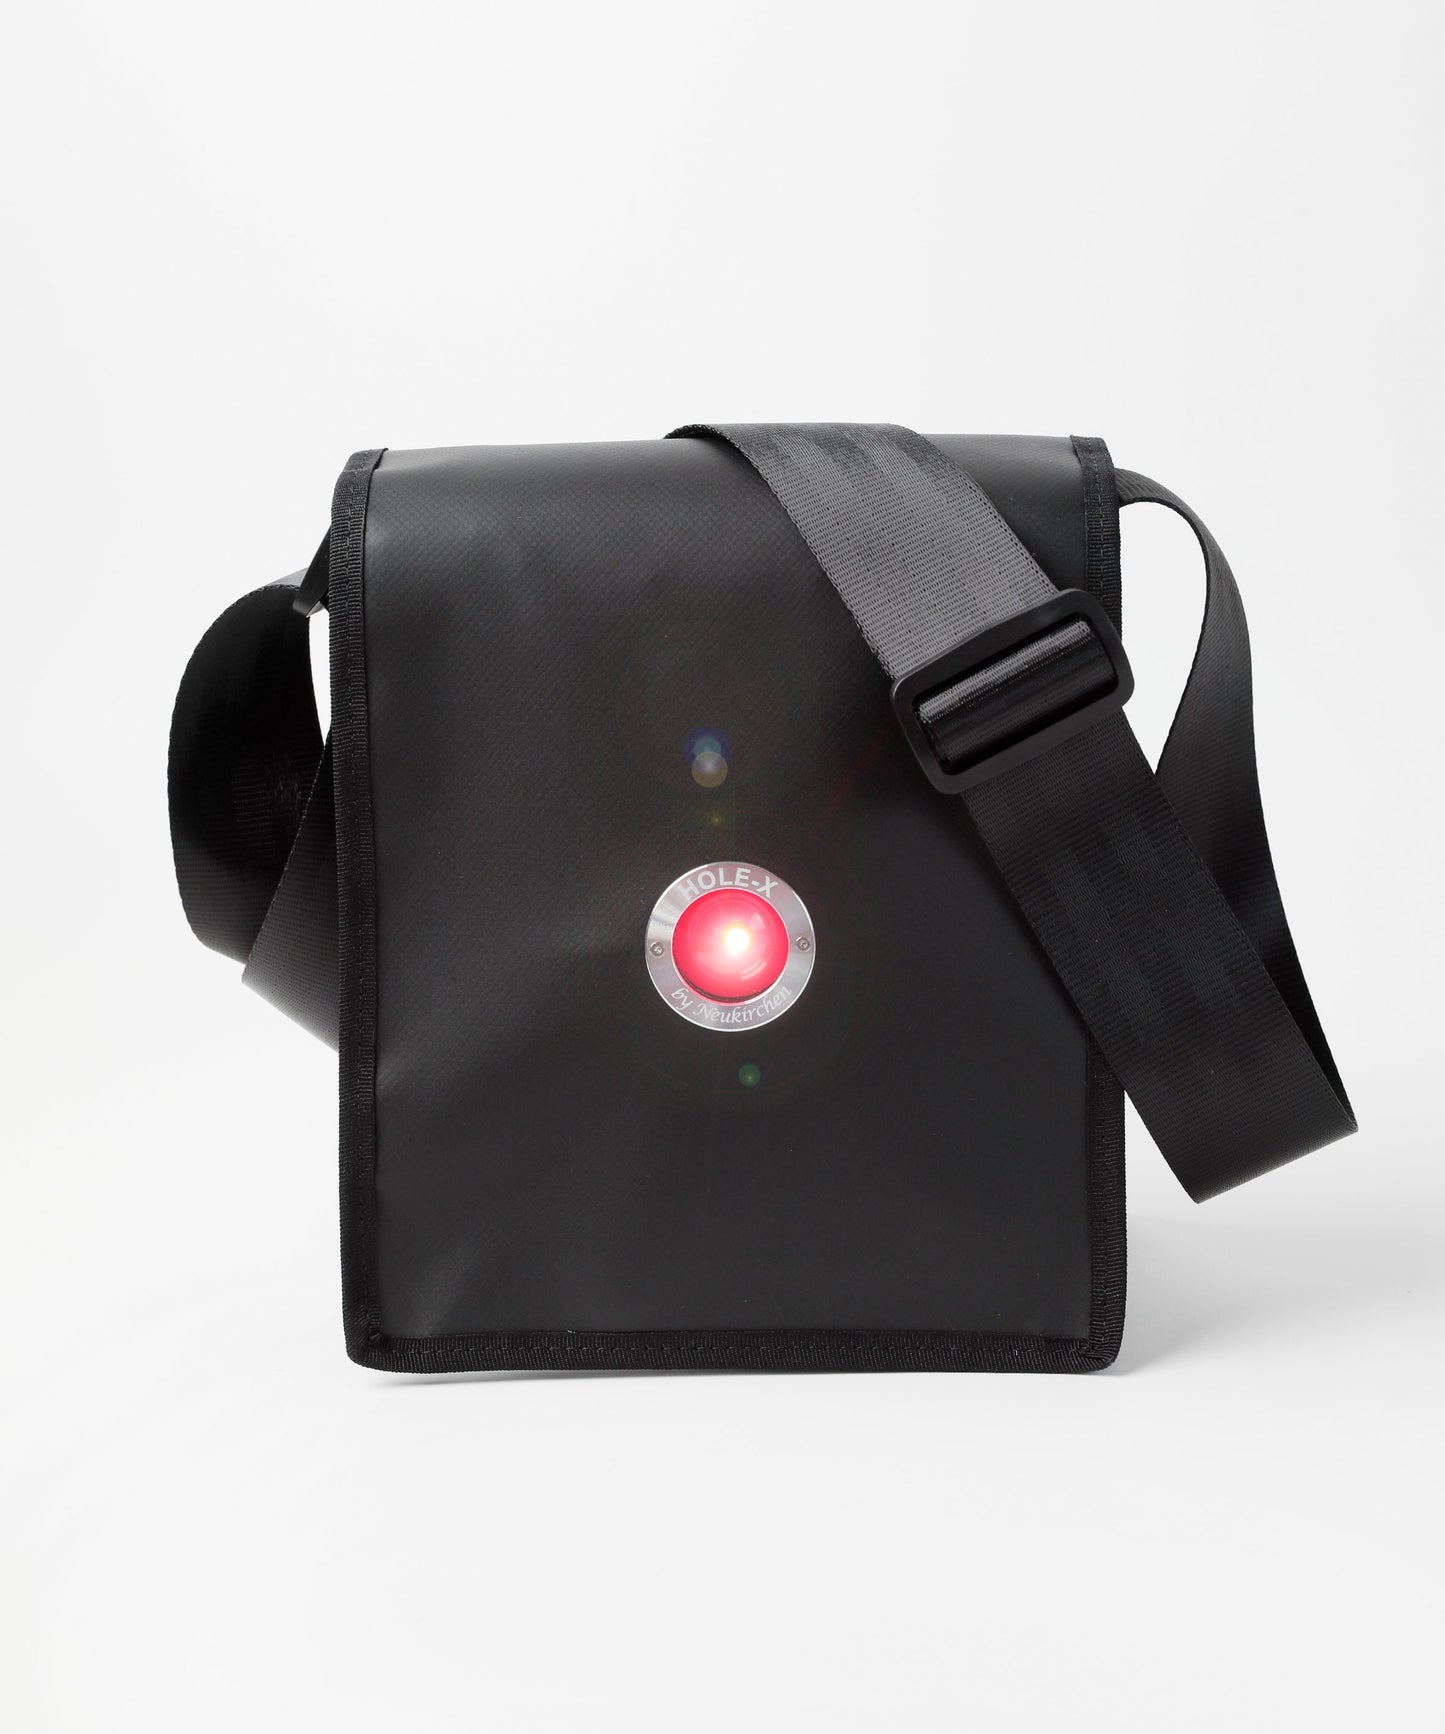 HOLE-X BRAVO Umhängetasche LKW-Plane schwarz Bringe Deine Tasche zum Leuchten Neuheit Tragetasche Bullauge Innovation 2020